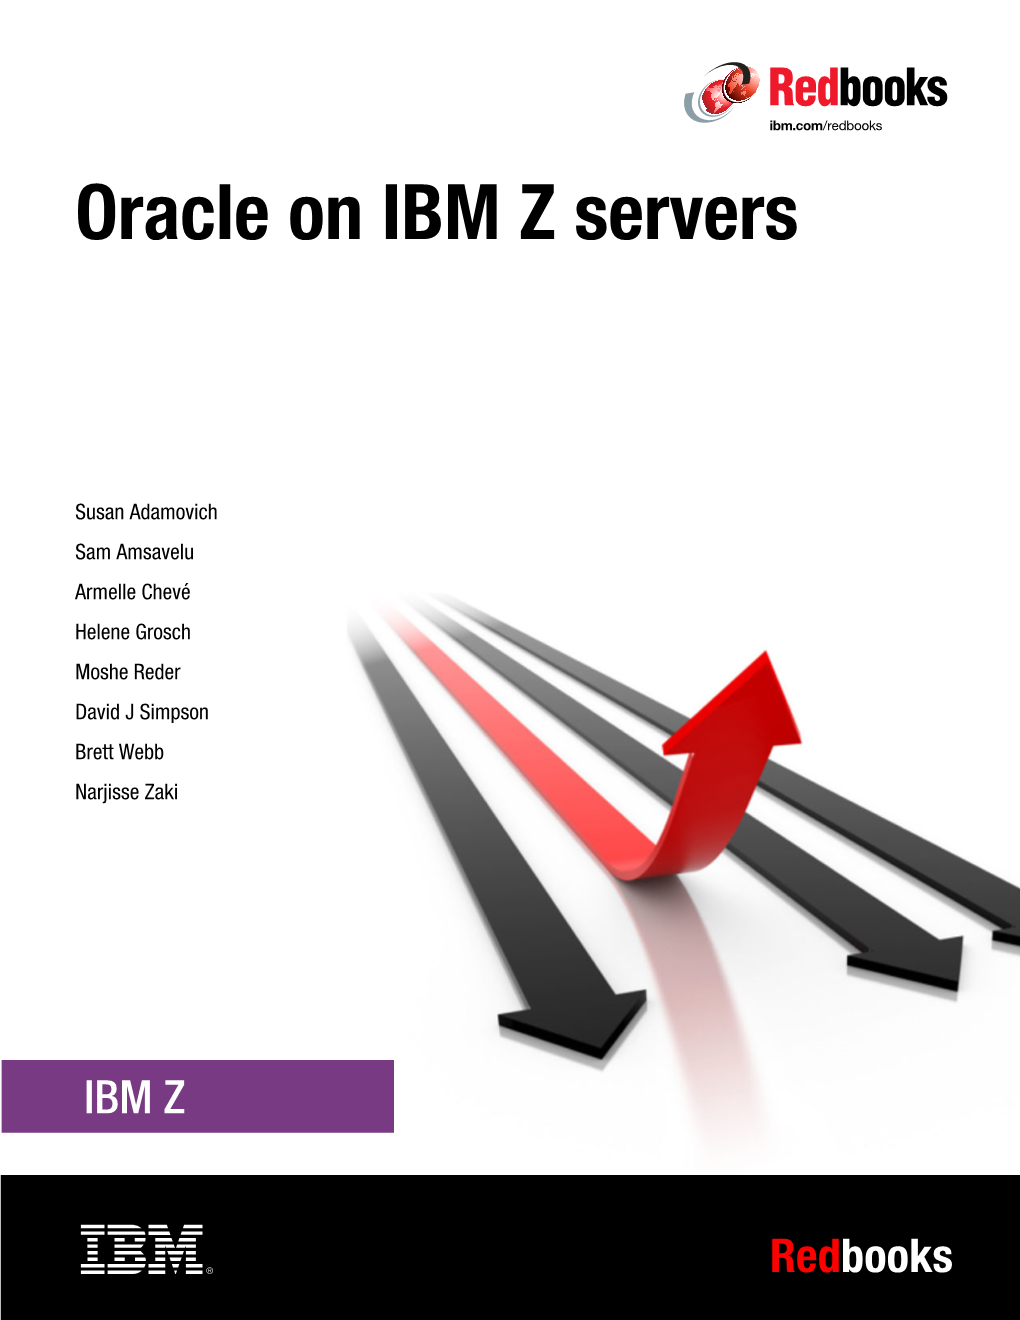 Oracle on IBM Z Servers